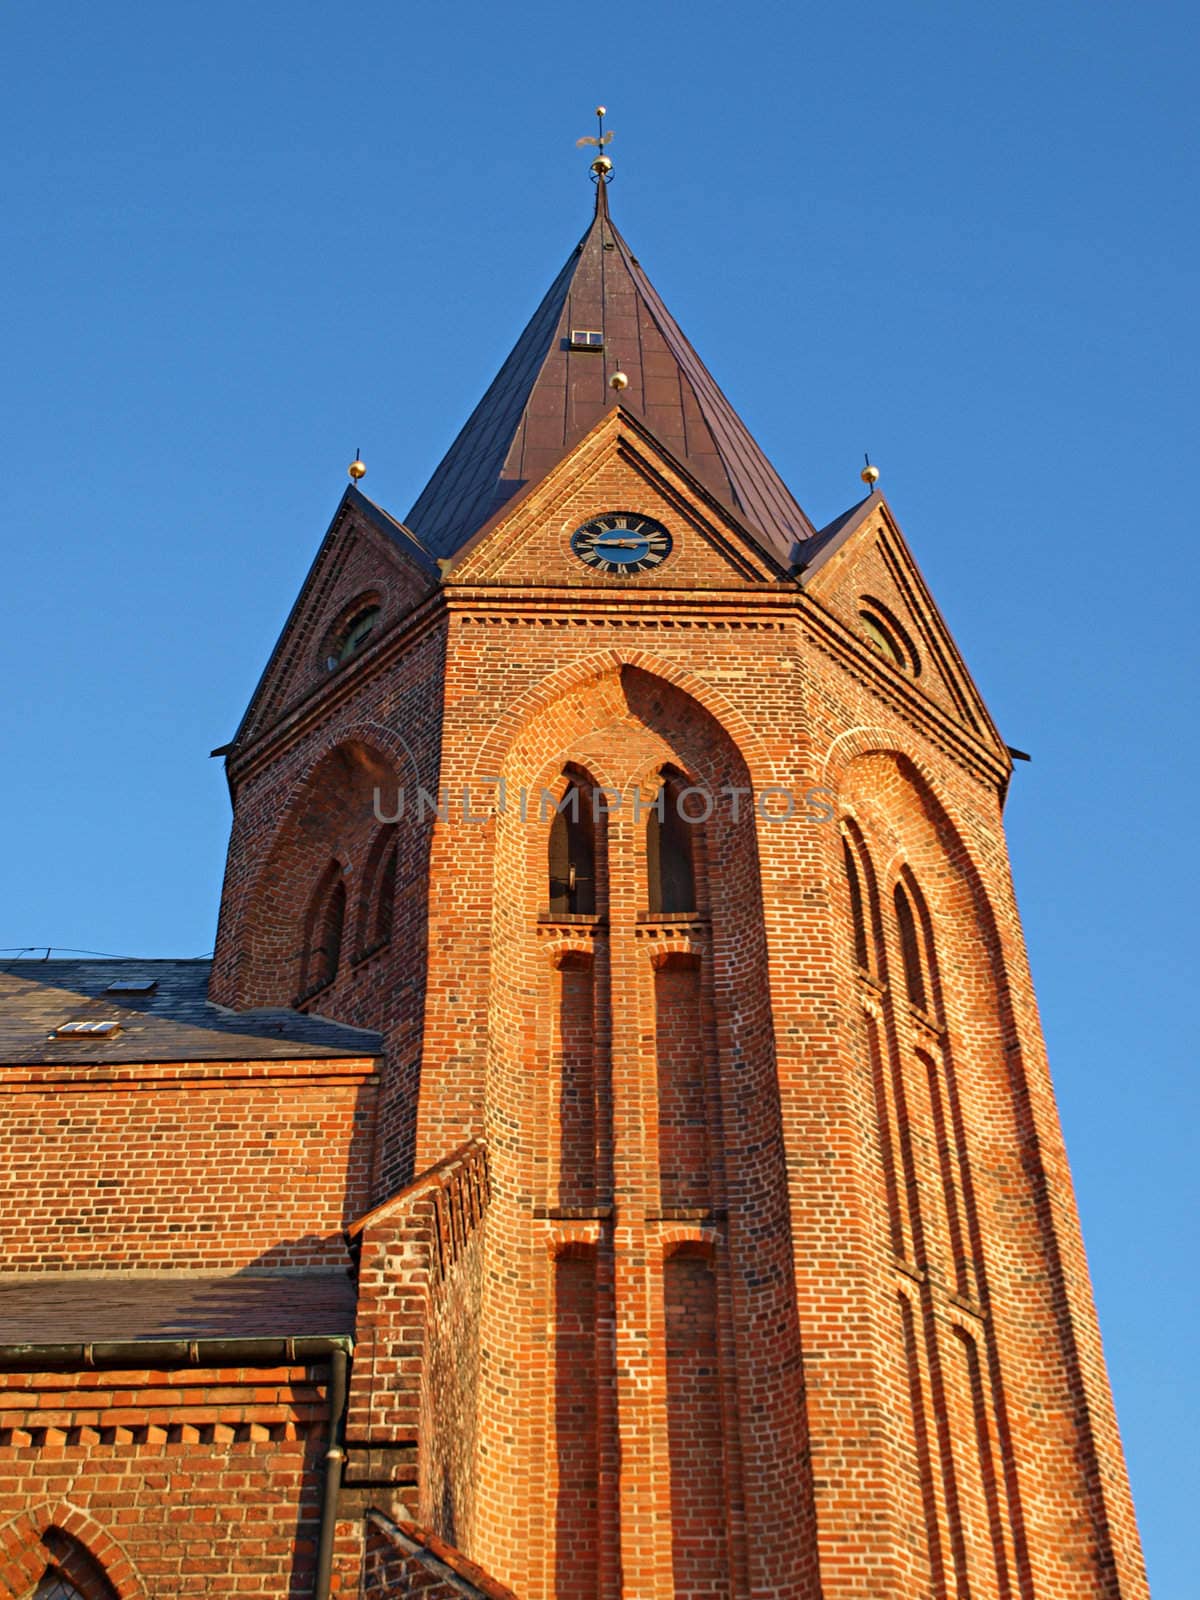 Tower of a church Assens Denmark 